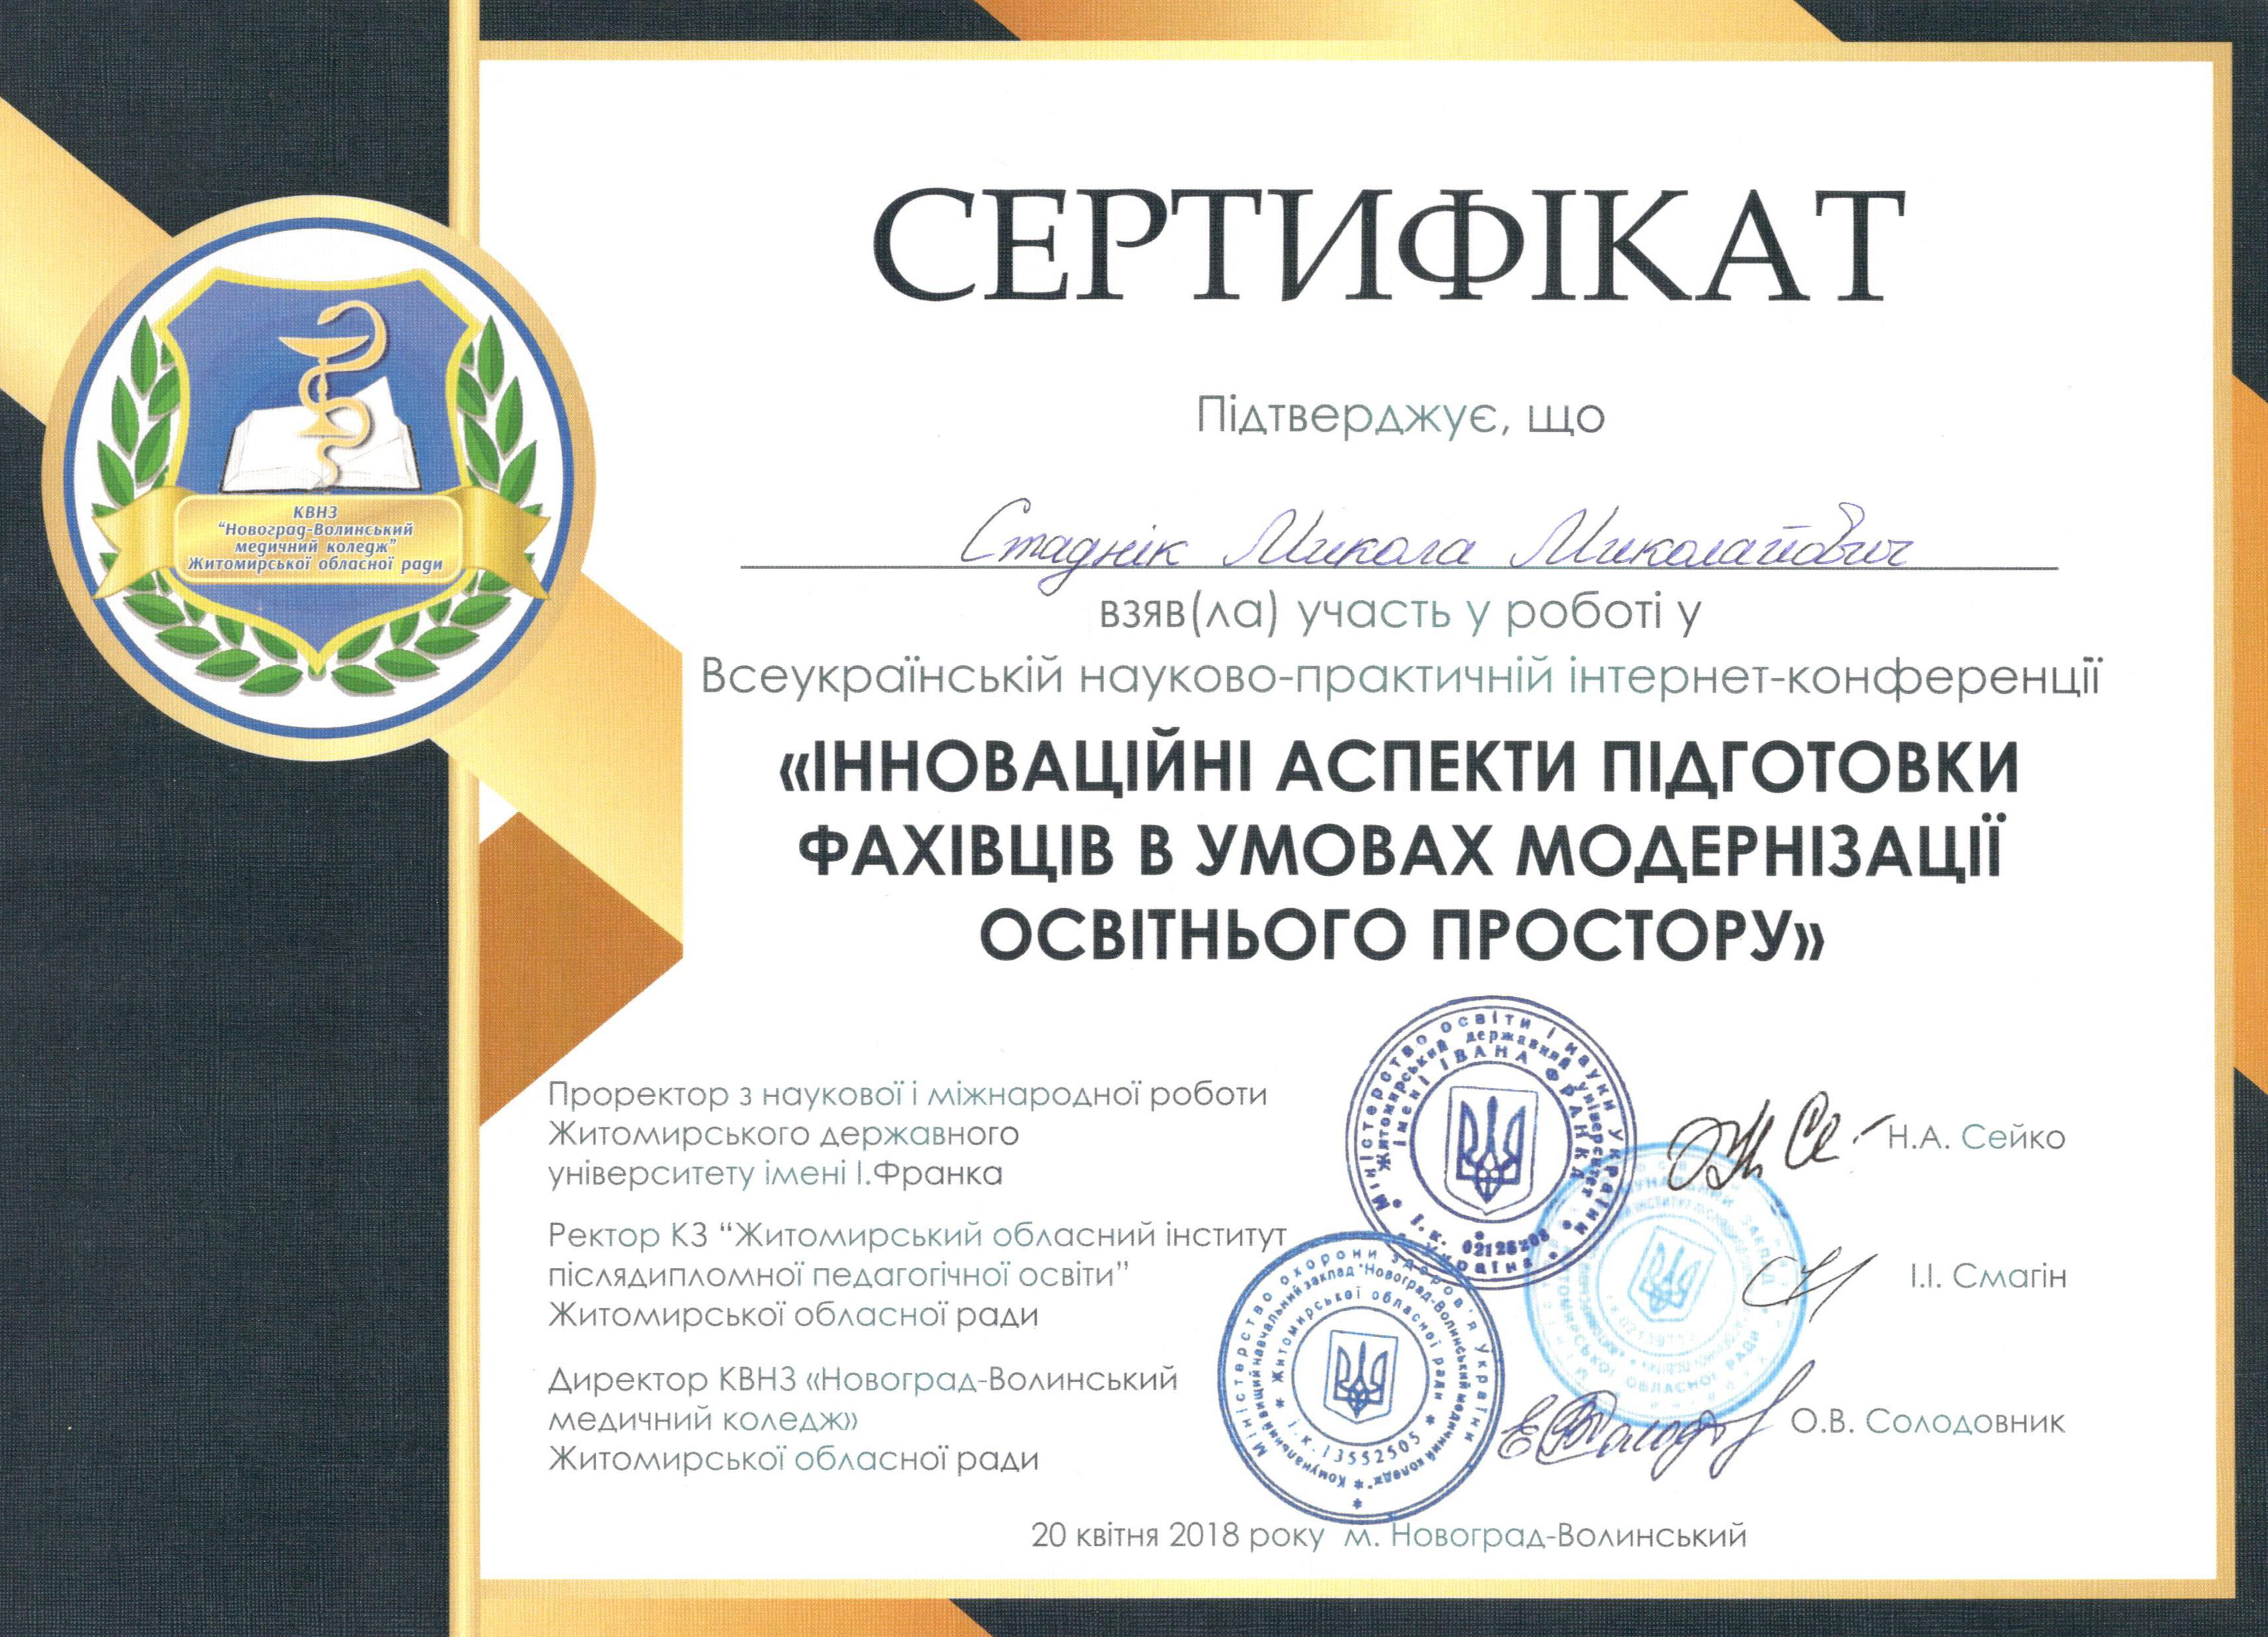 Сертифікат Всеукраїнської науково-практичної інтернет-конференції «Інноваційні аспекти підготовки фахівців в умовах модернізації освітнього простору»